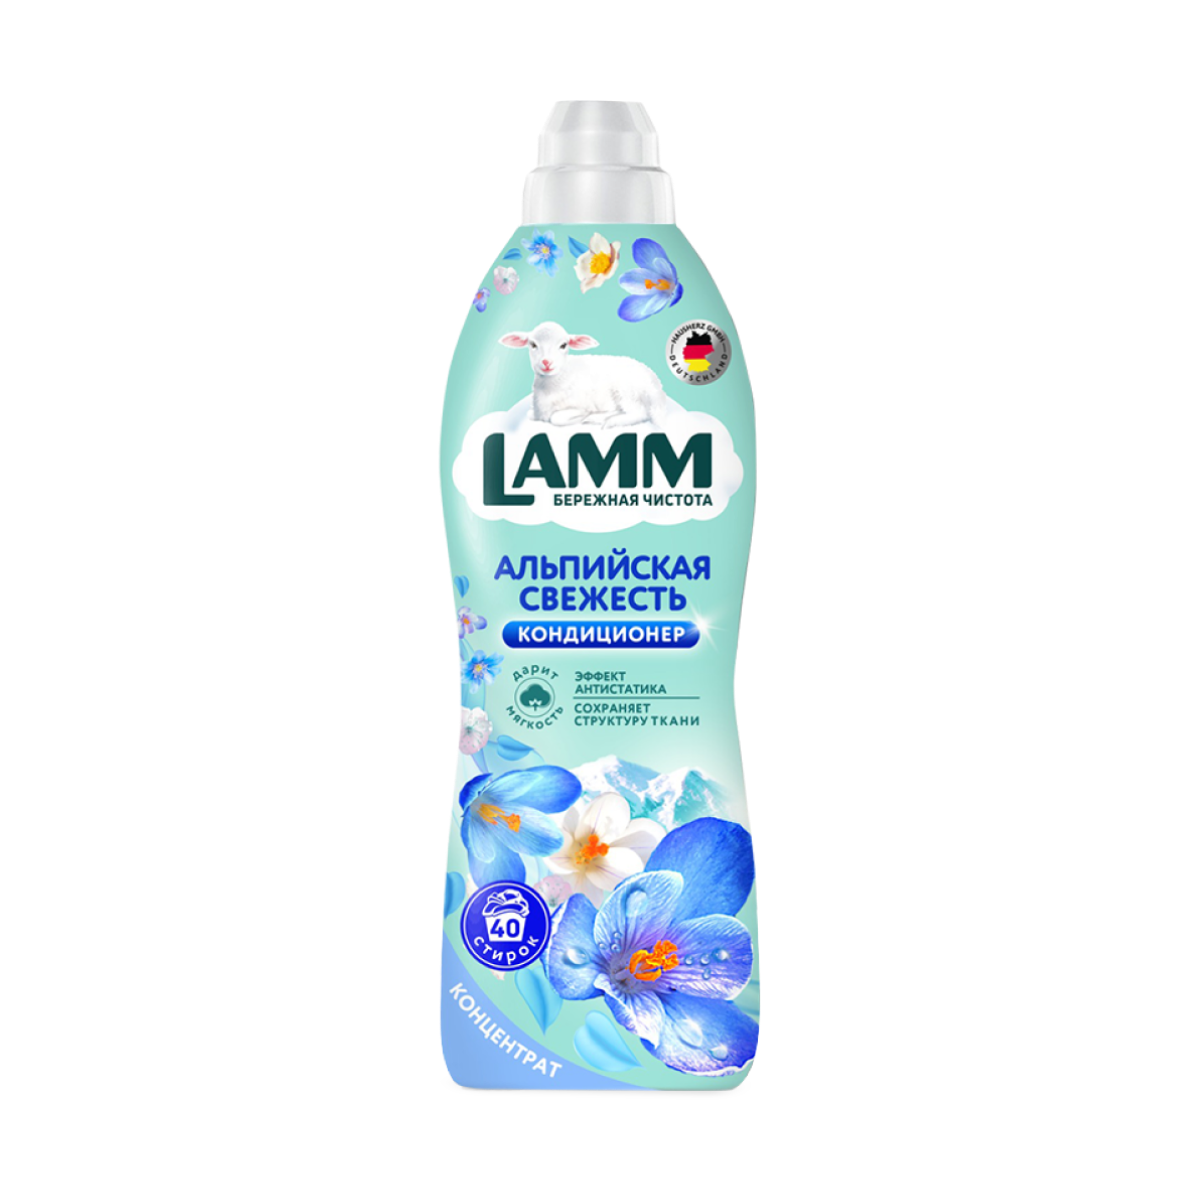 Кондиционер ополаскиватель для белья LAMM Альпийская свежесть 1 л, концентрат, 40 стирок, универсальный, 1 литр, для всех типов белья, Lamm Ламм Лам